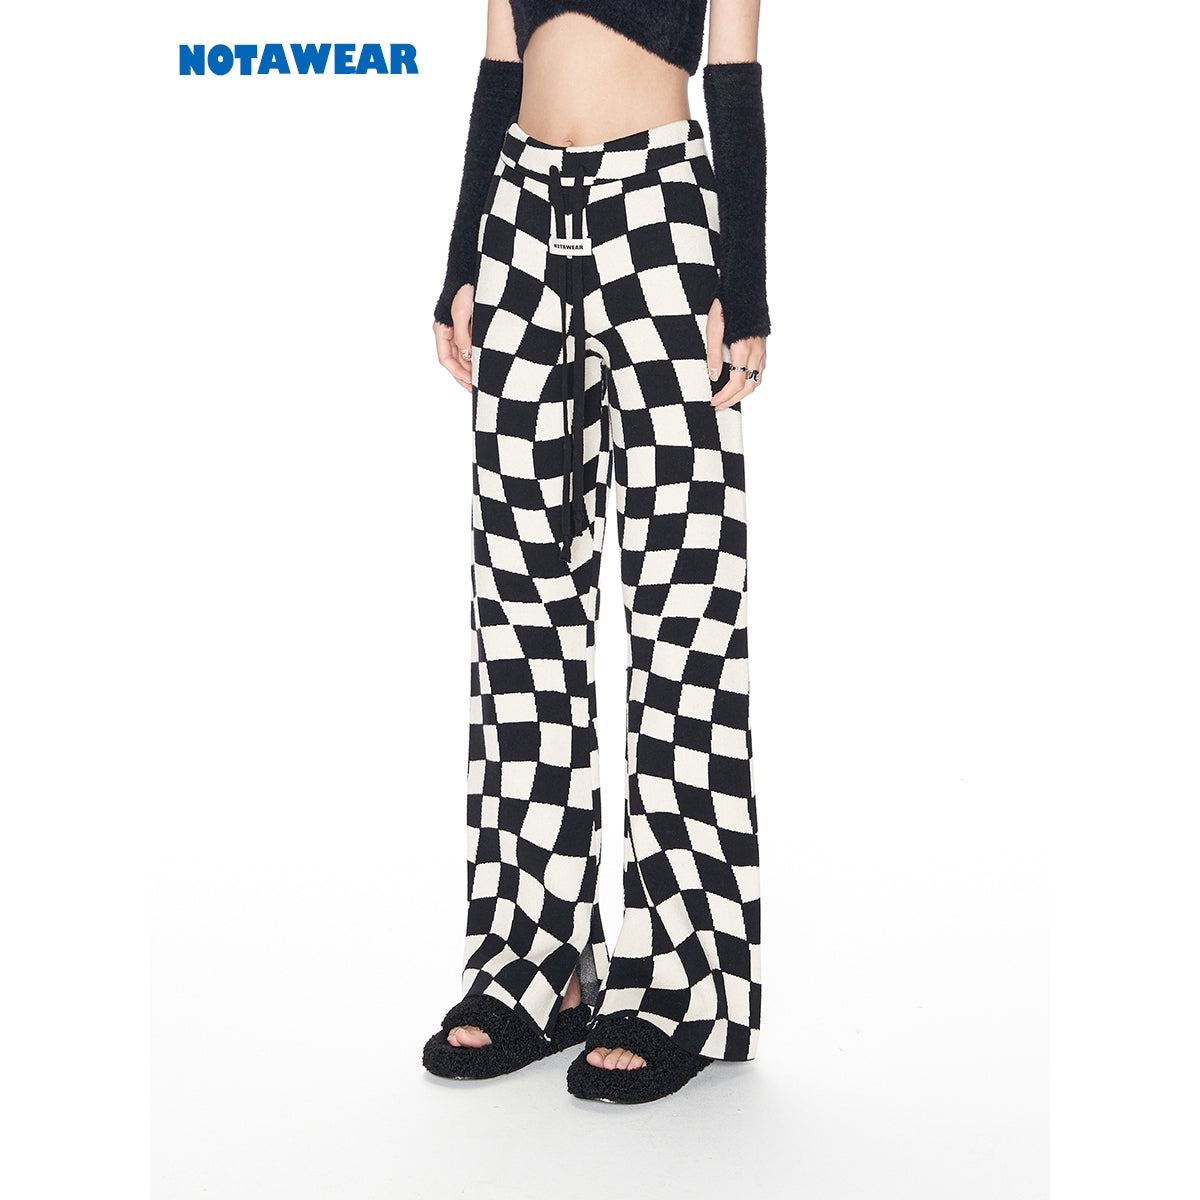 NotAwear Asymmetrical Checkboard Knit Pants